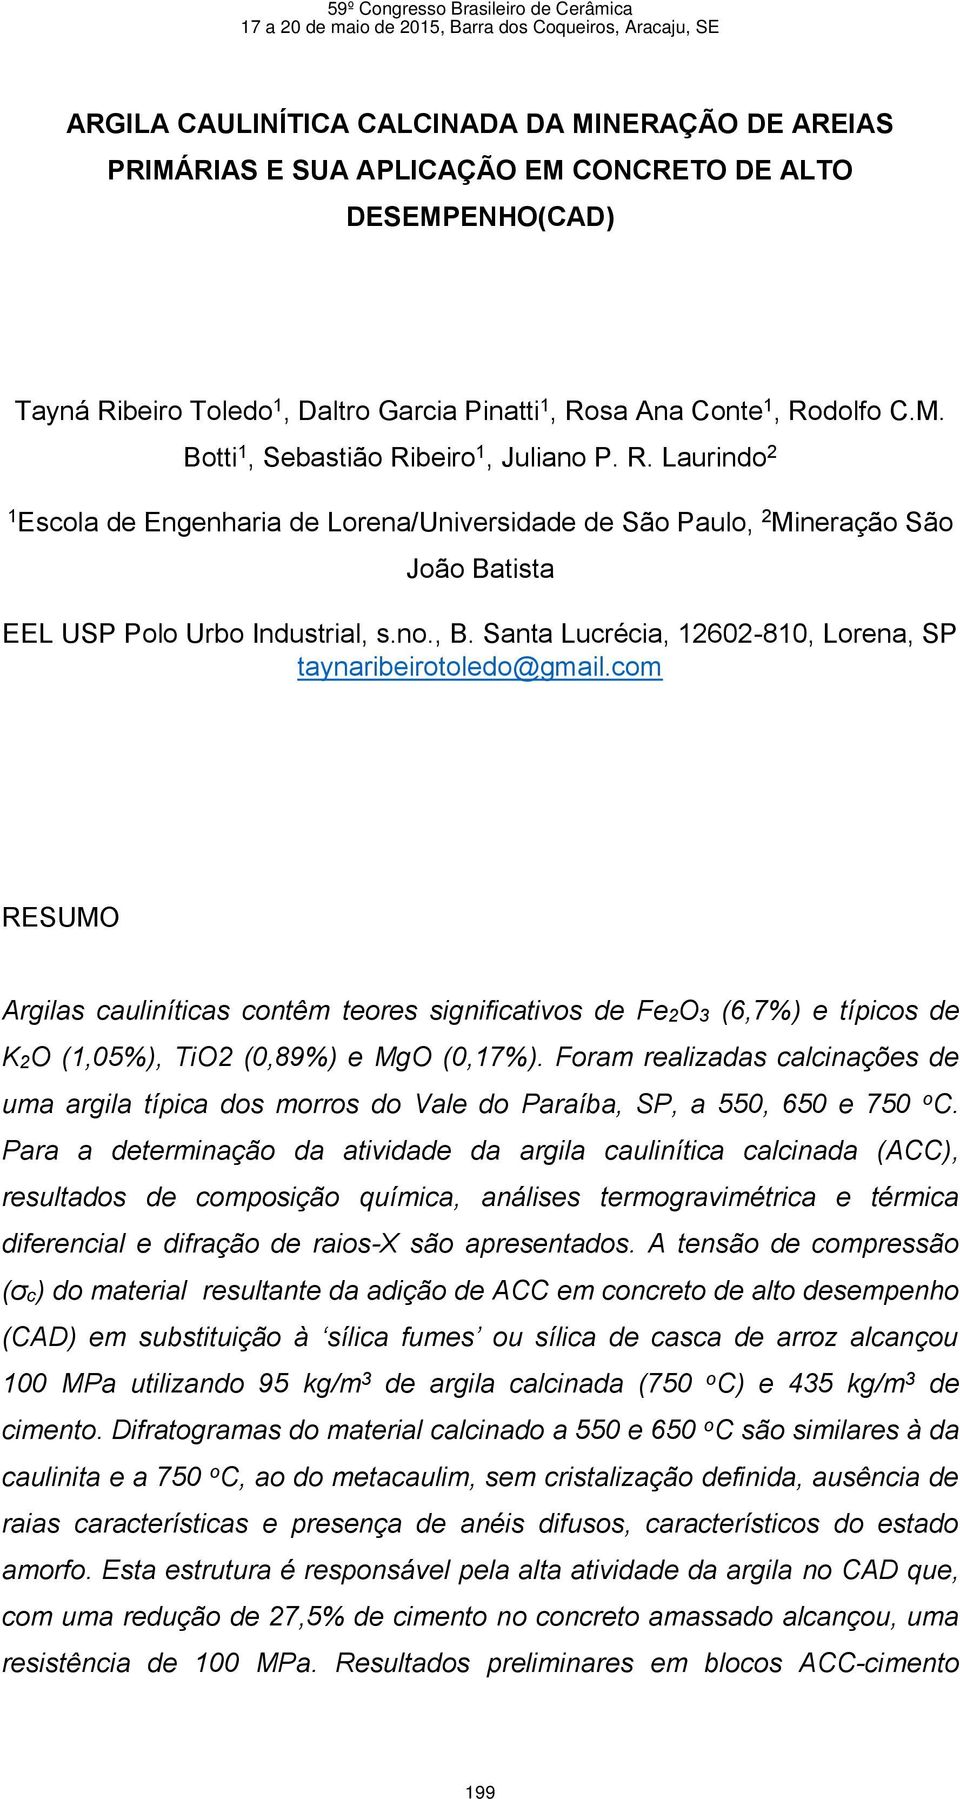 Santa Lucrécia, 12602-810, Lorena, SP taynaribeirotoledo@gmail.com RESUMO Argilas cauliníticas contêm teores significativos de Fe2O3 (6,7%) e típicos de K2O (1,05%), TiO2 (0,89%) e MgO (0,17%).